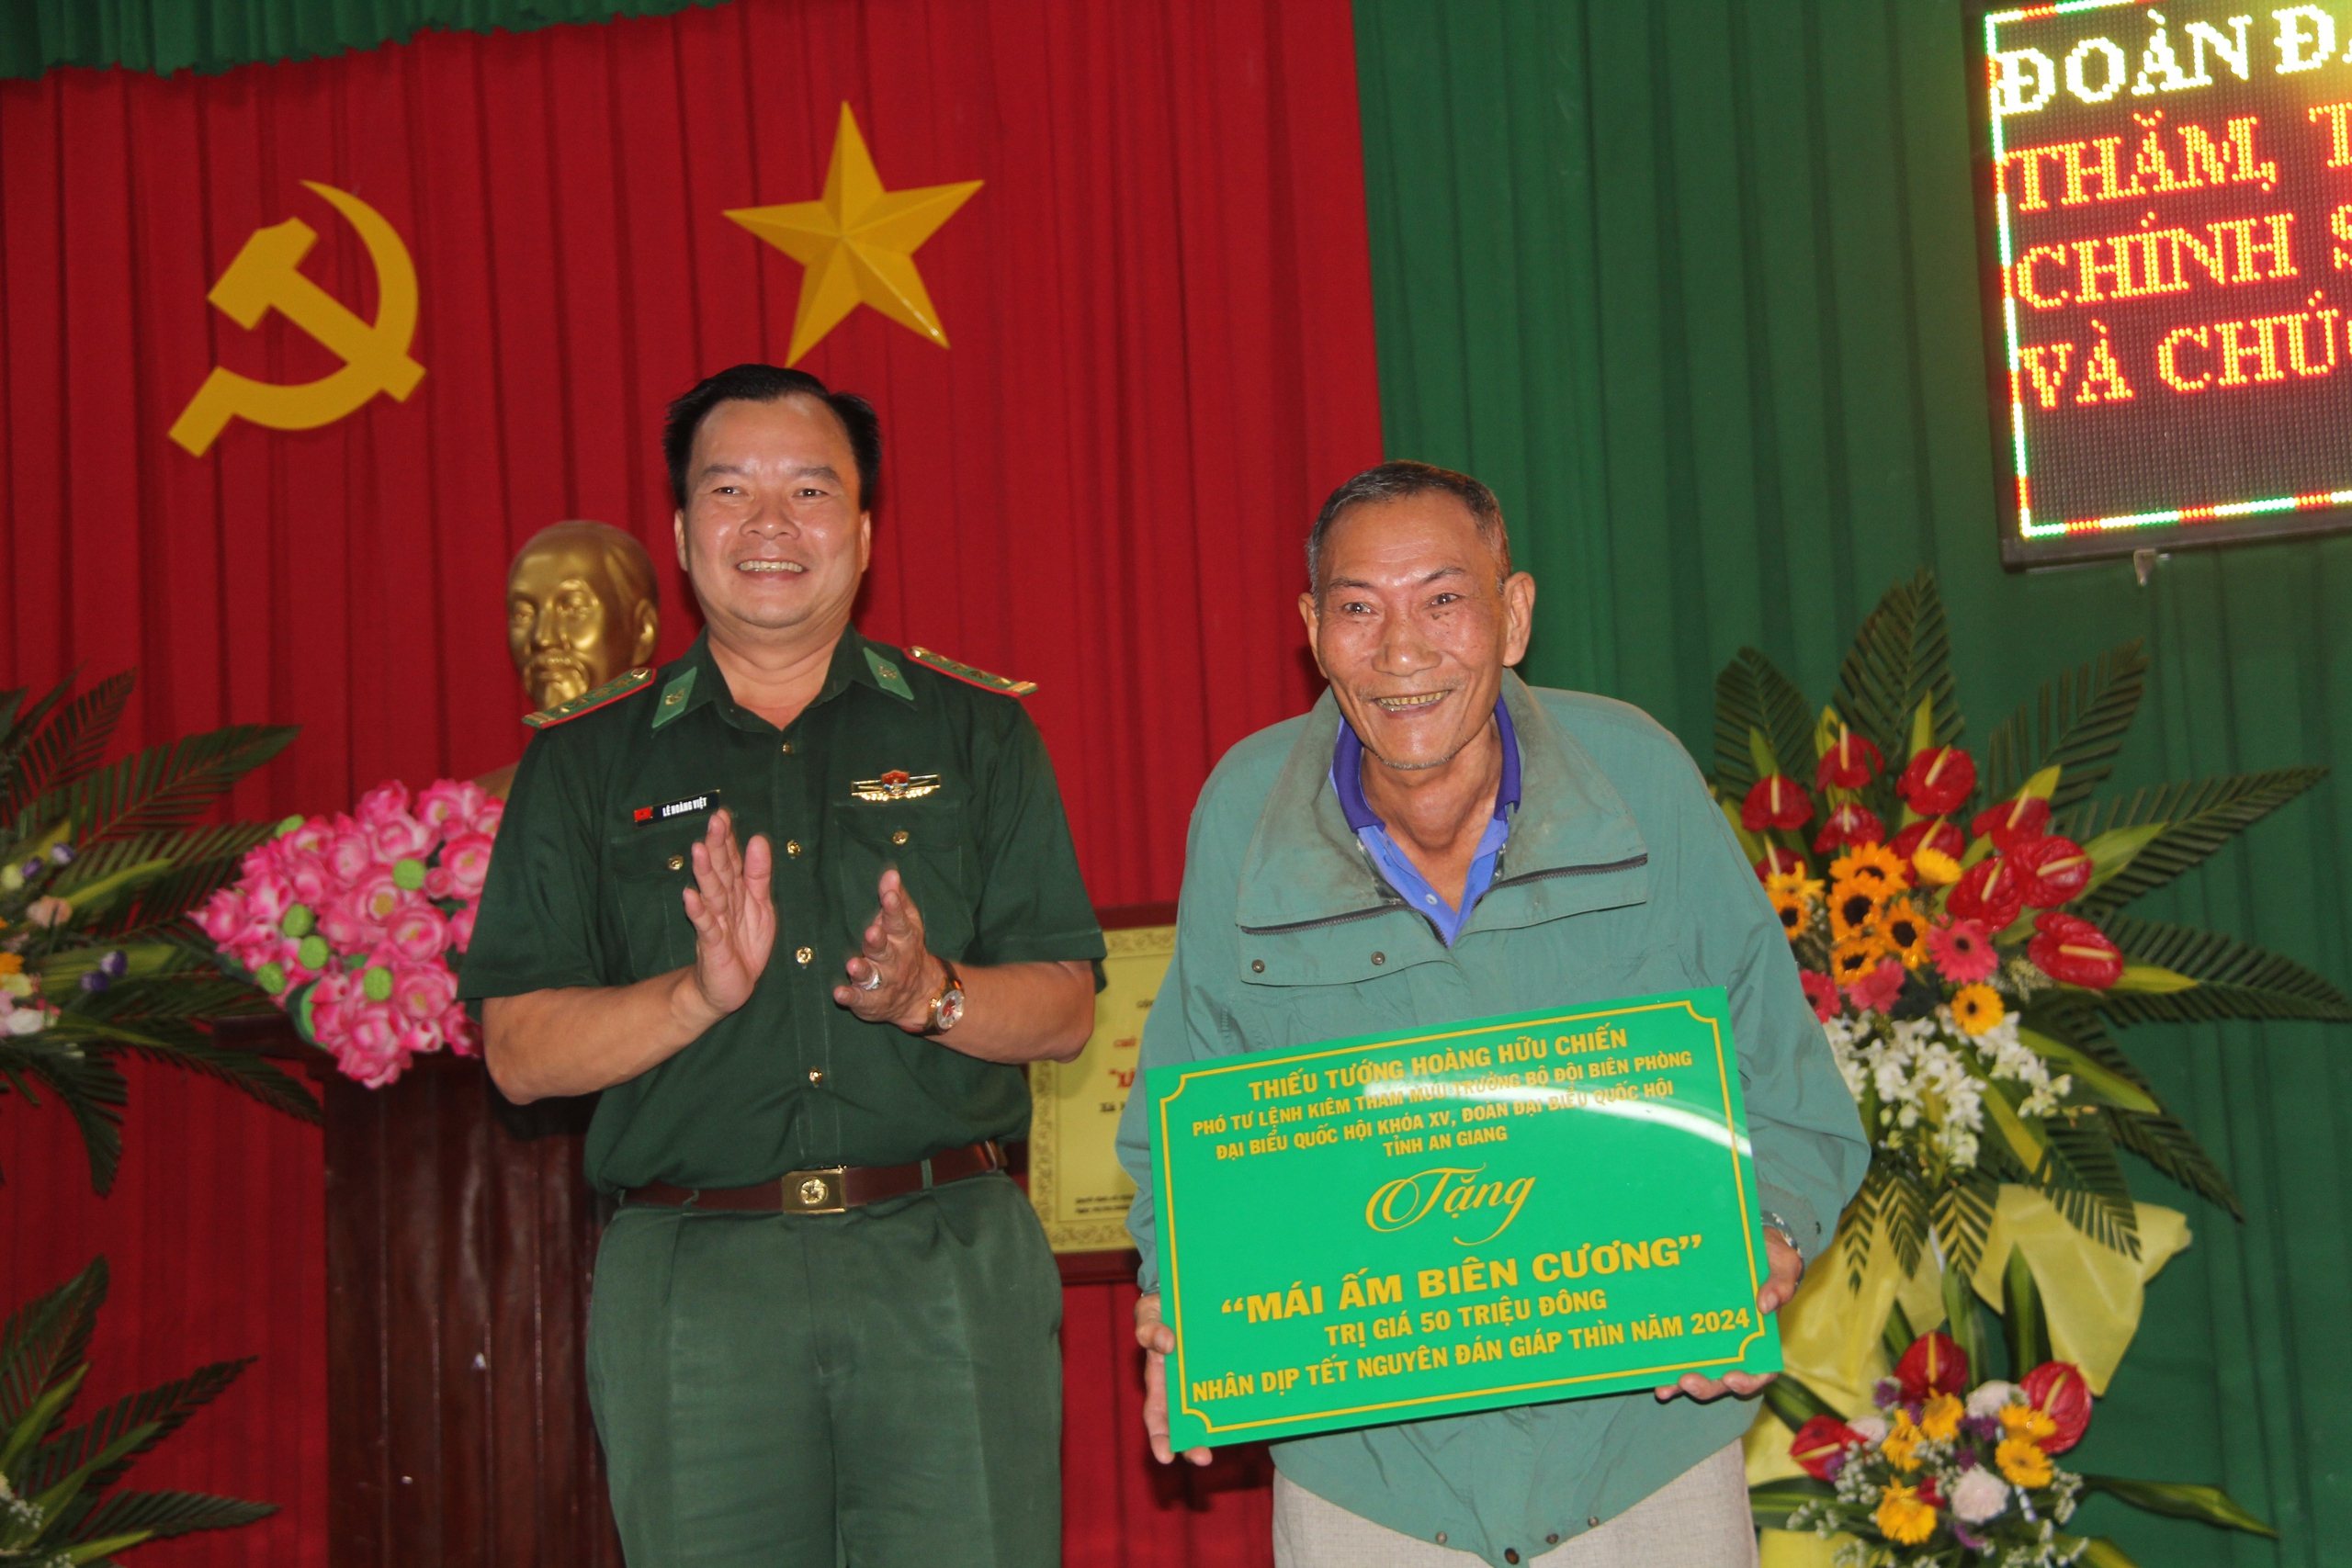 Chủ tịch Hội NDVN Lương Quốc Đoàn trao quà Tết cho người dân tại 4 địa phương của An Giang- Ảnh 3.